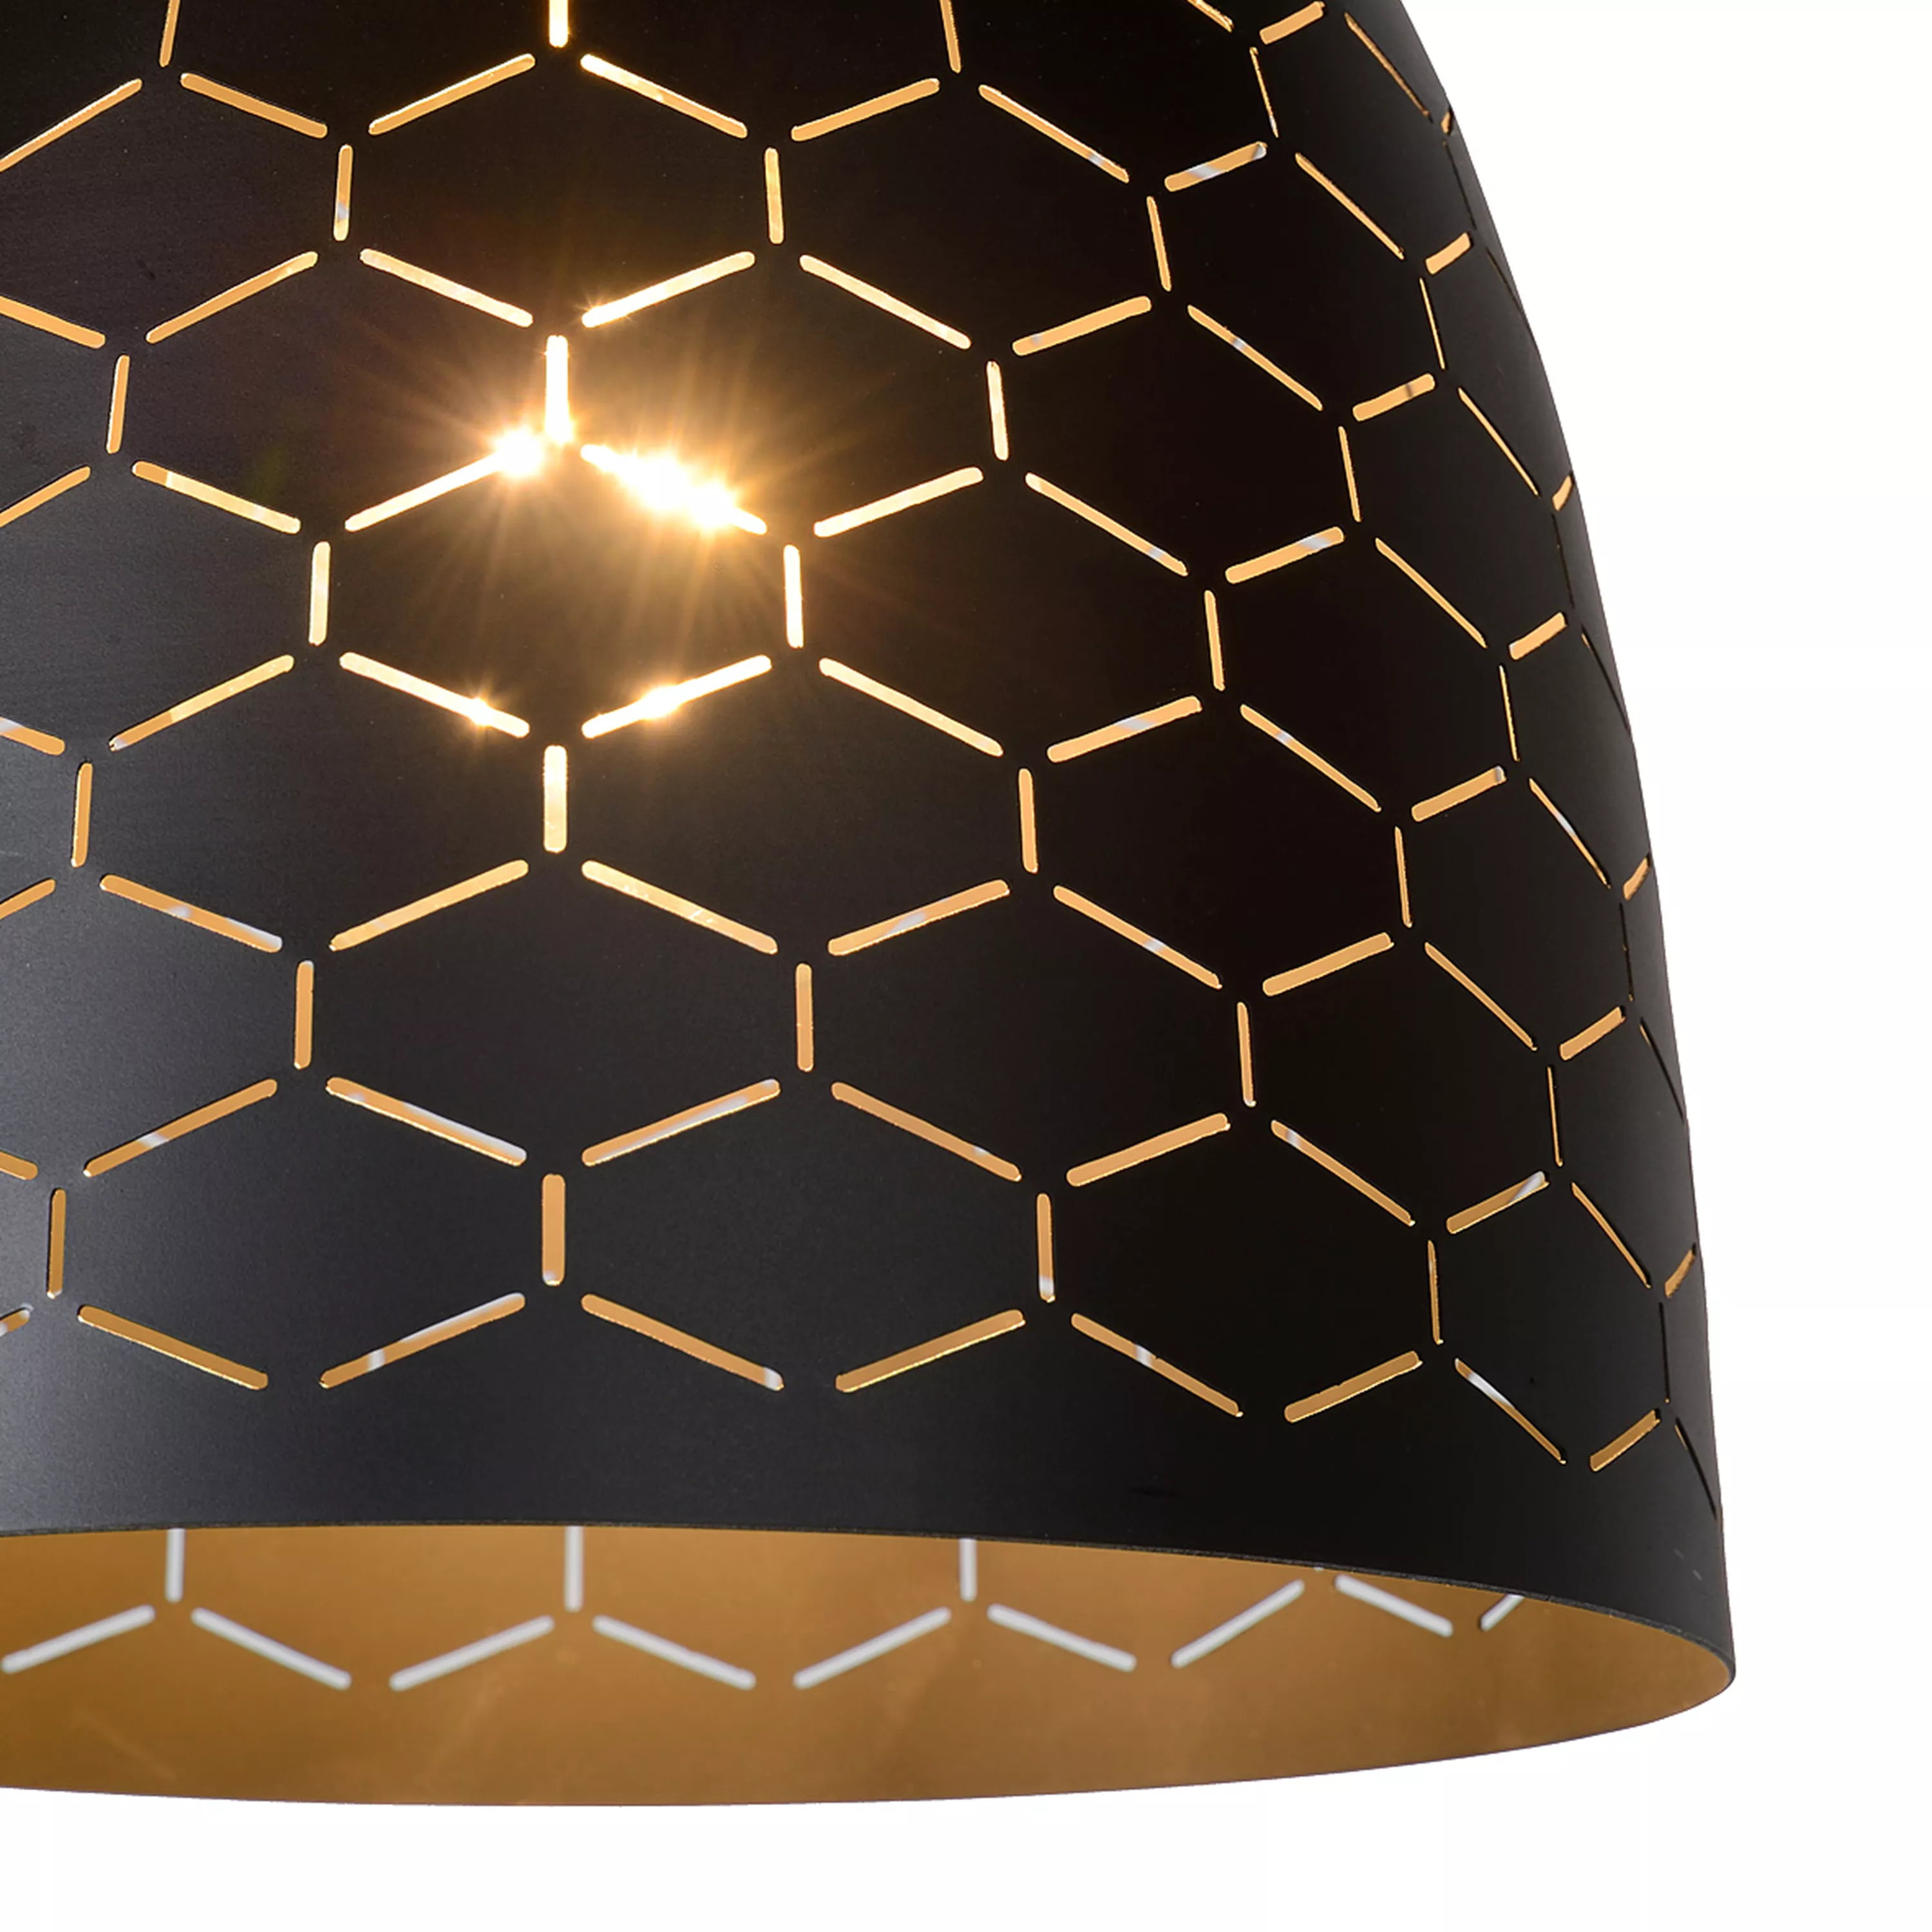 Závesné svetlo Galla v čiernej farbe so zlatým podfarbením a geometrickou perforáciou, ktorá vytvára hru svetiel a tieňov. Ideálne nad jedálenský alebo konferenčný stôl.